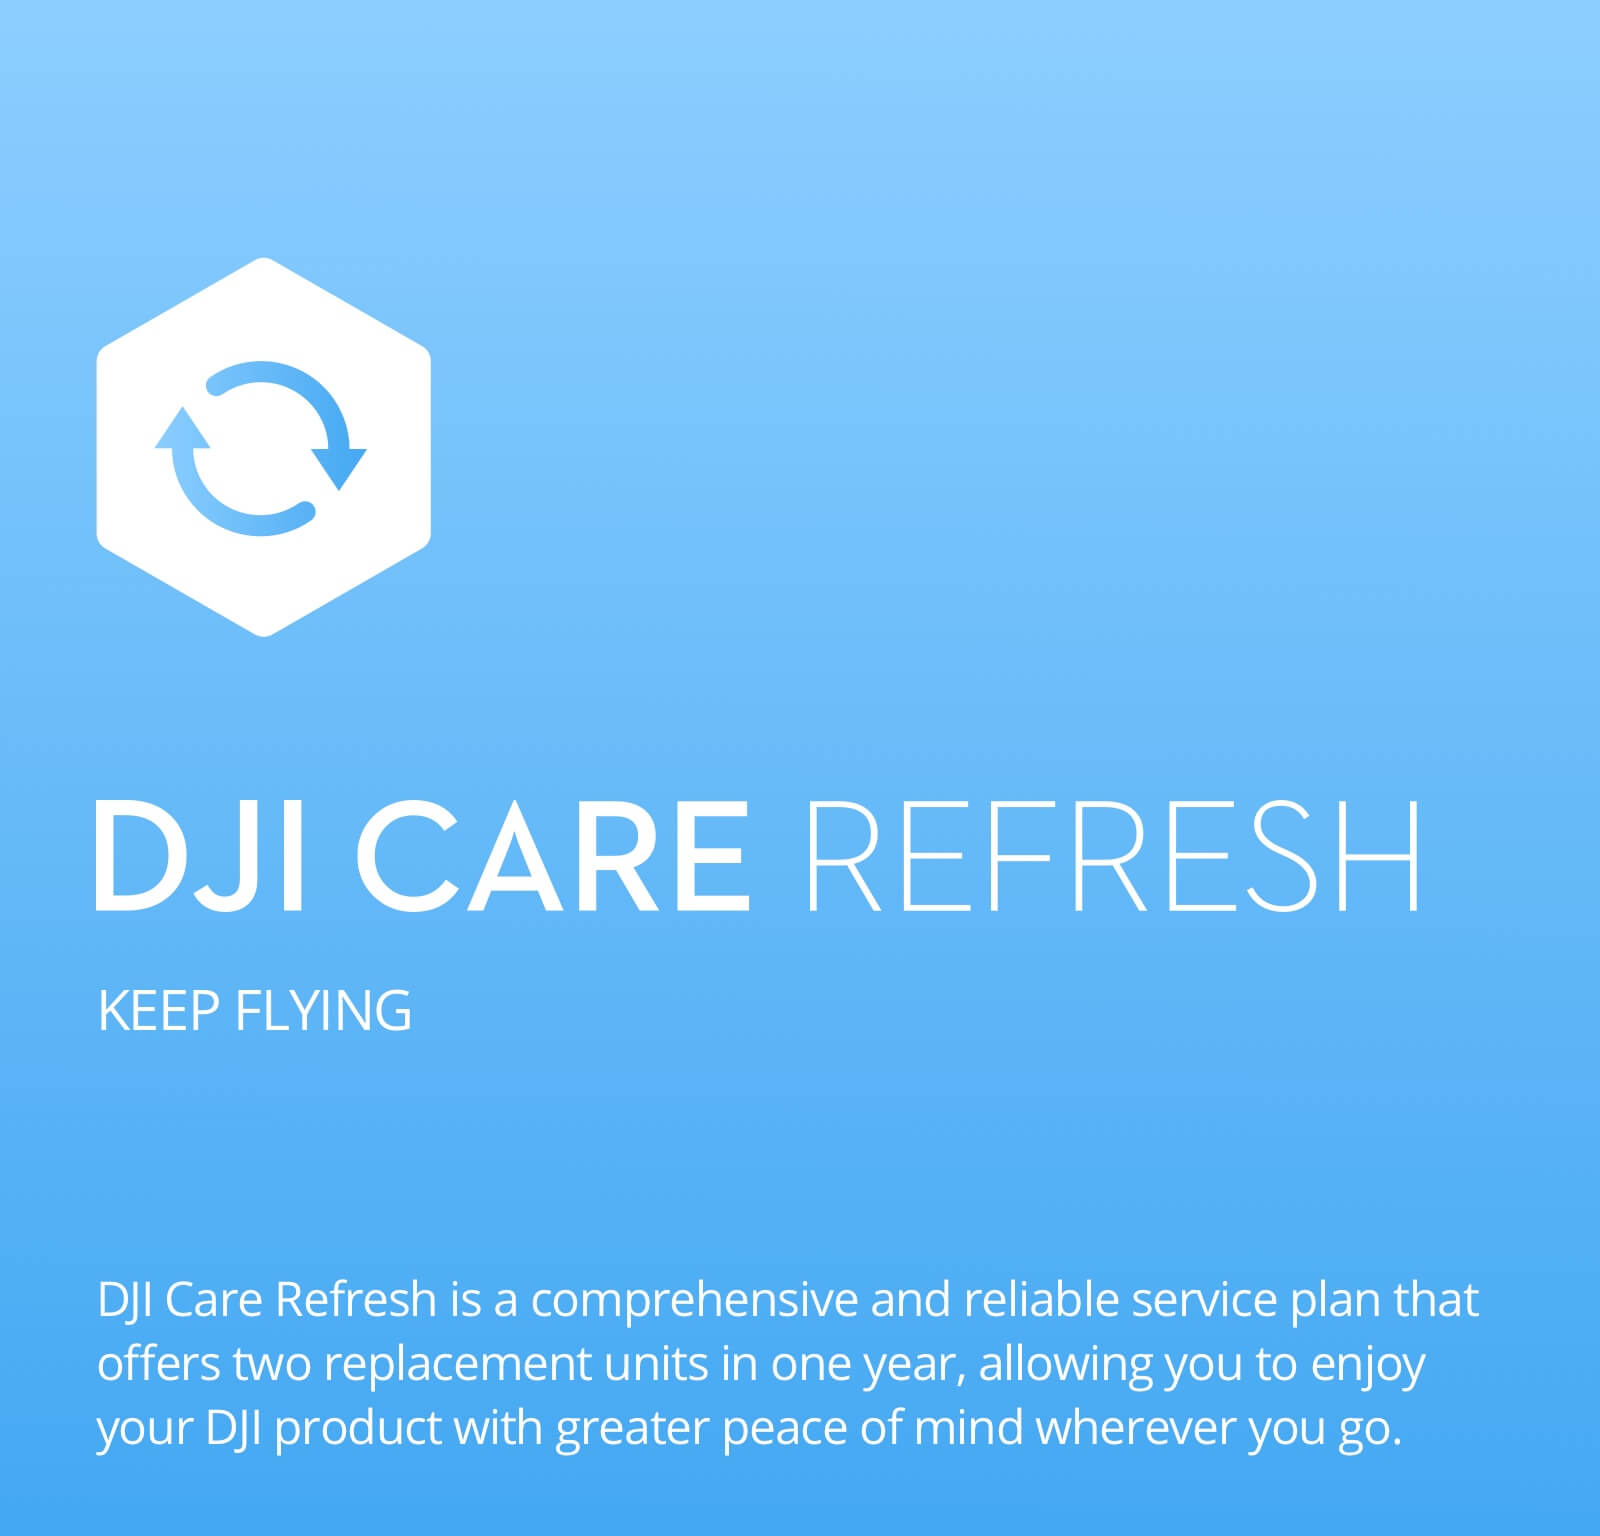 DJI Mavic 2 Pro / Zoom Care Refresh - Drohnenversicherung - wird digital geliefert